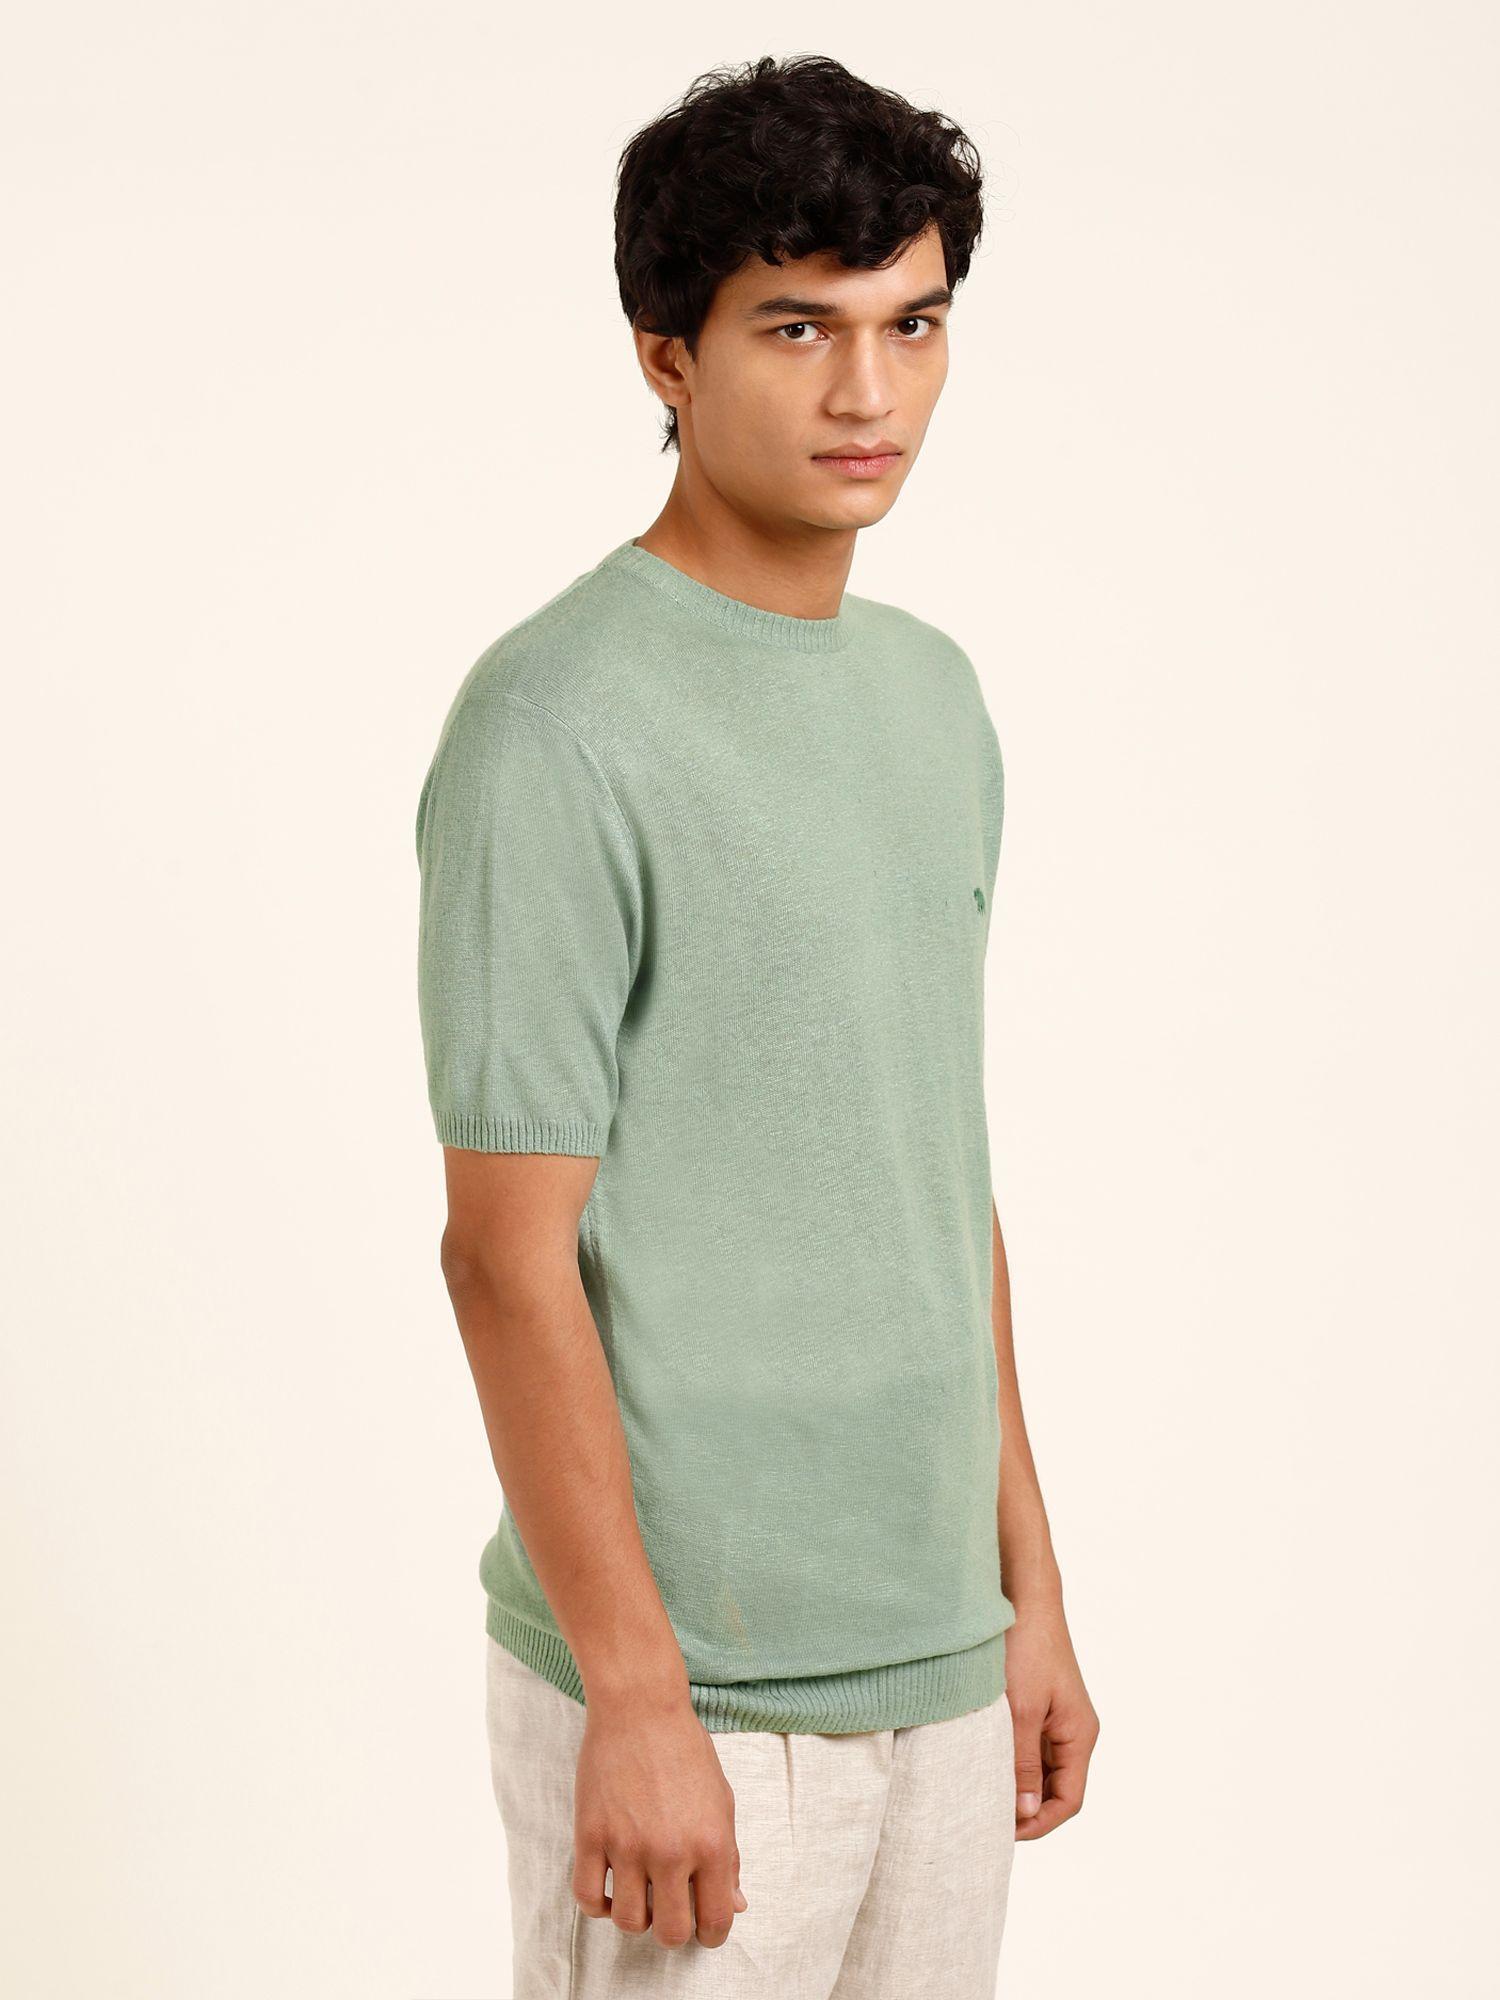 linen viscose knit green crew neck t-shirt